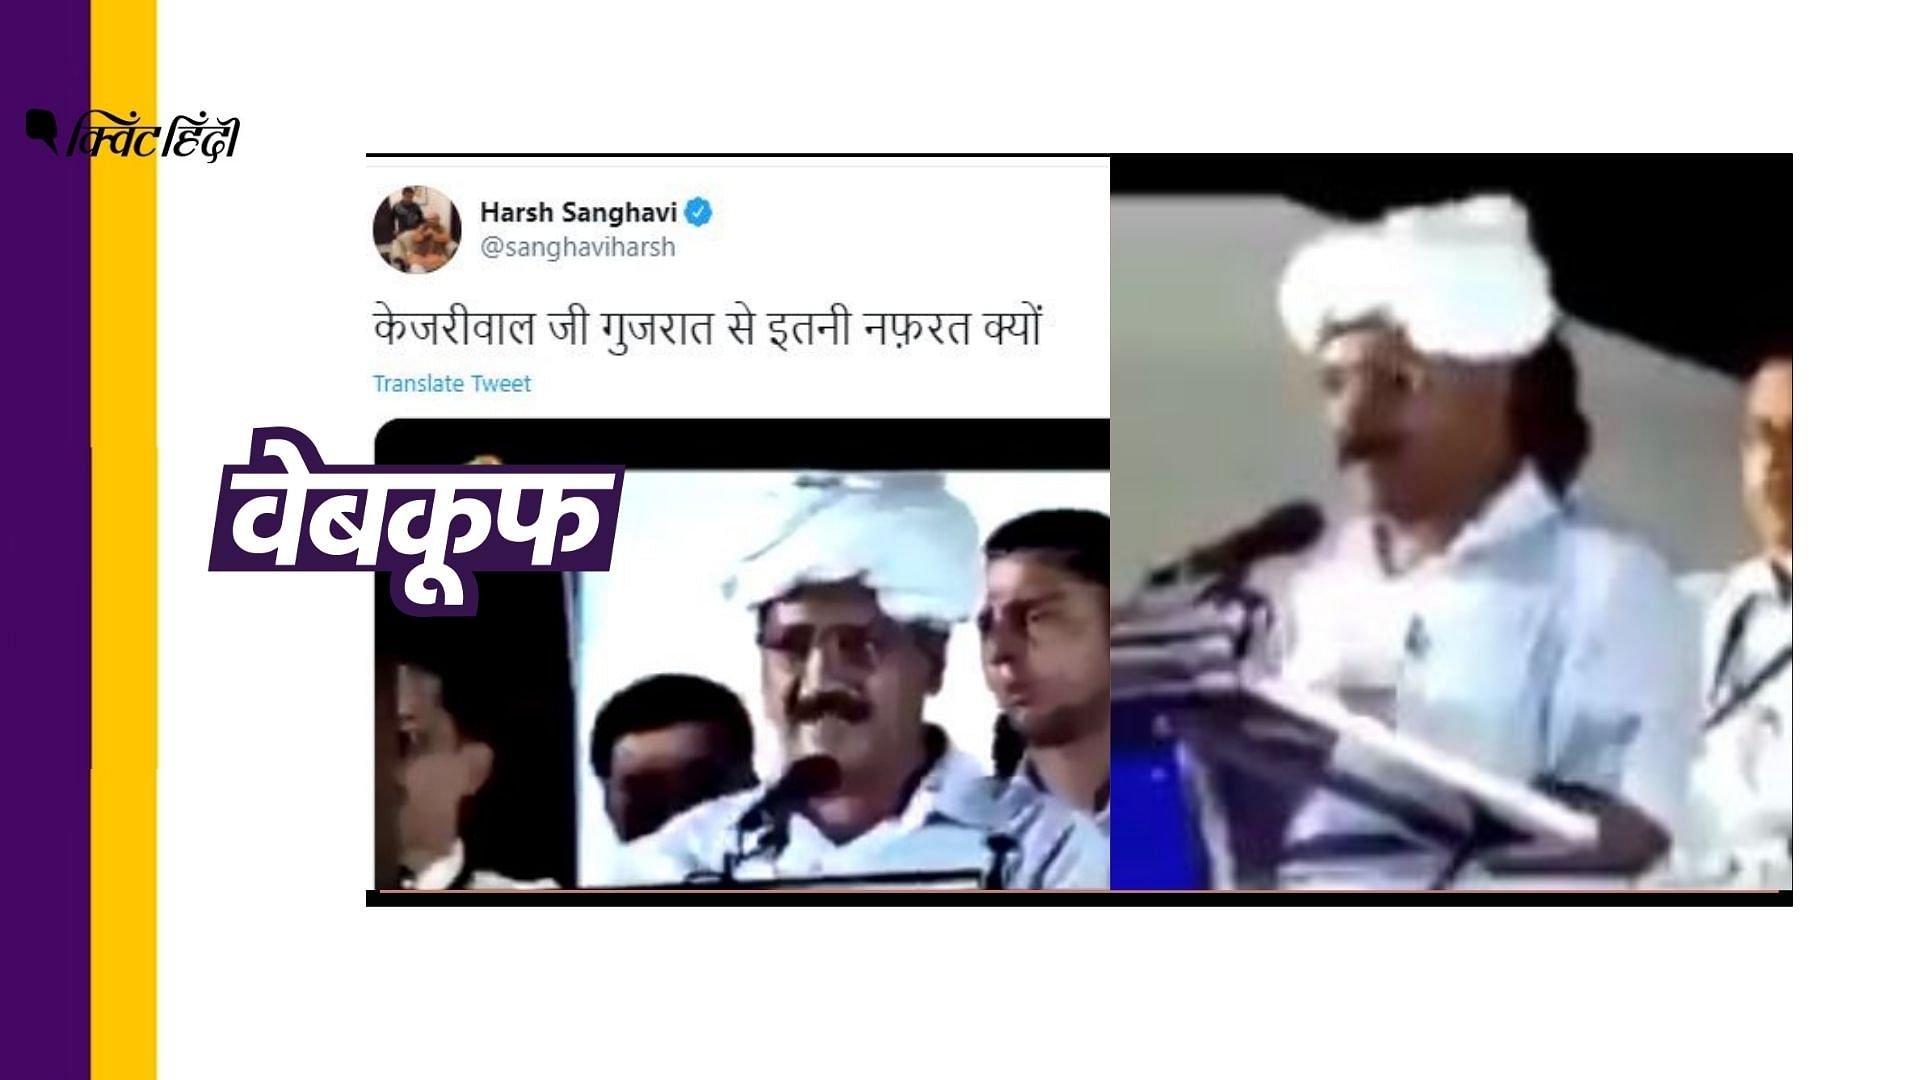 बीजेपी युवा मोर्चा के राष्ट्रीय उपाध्यक्ष हर्ष सिंघवी ने भी वीडियो गलत दावे से शेयर किया